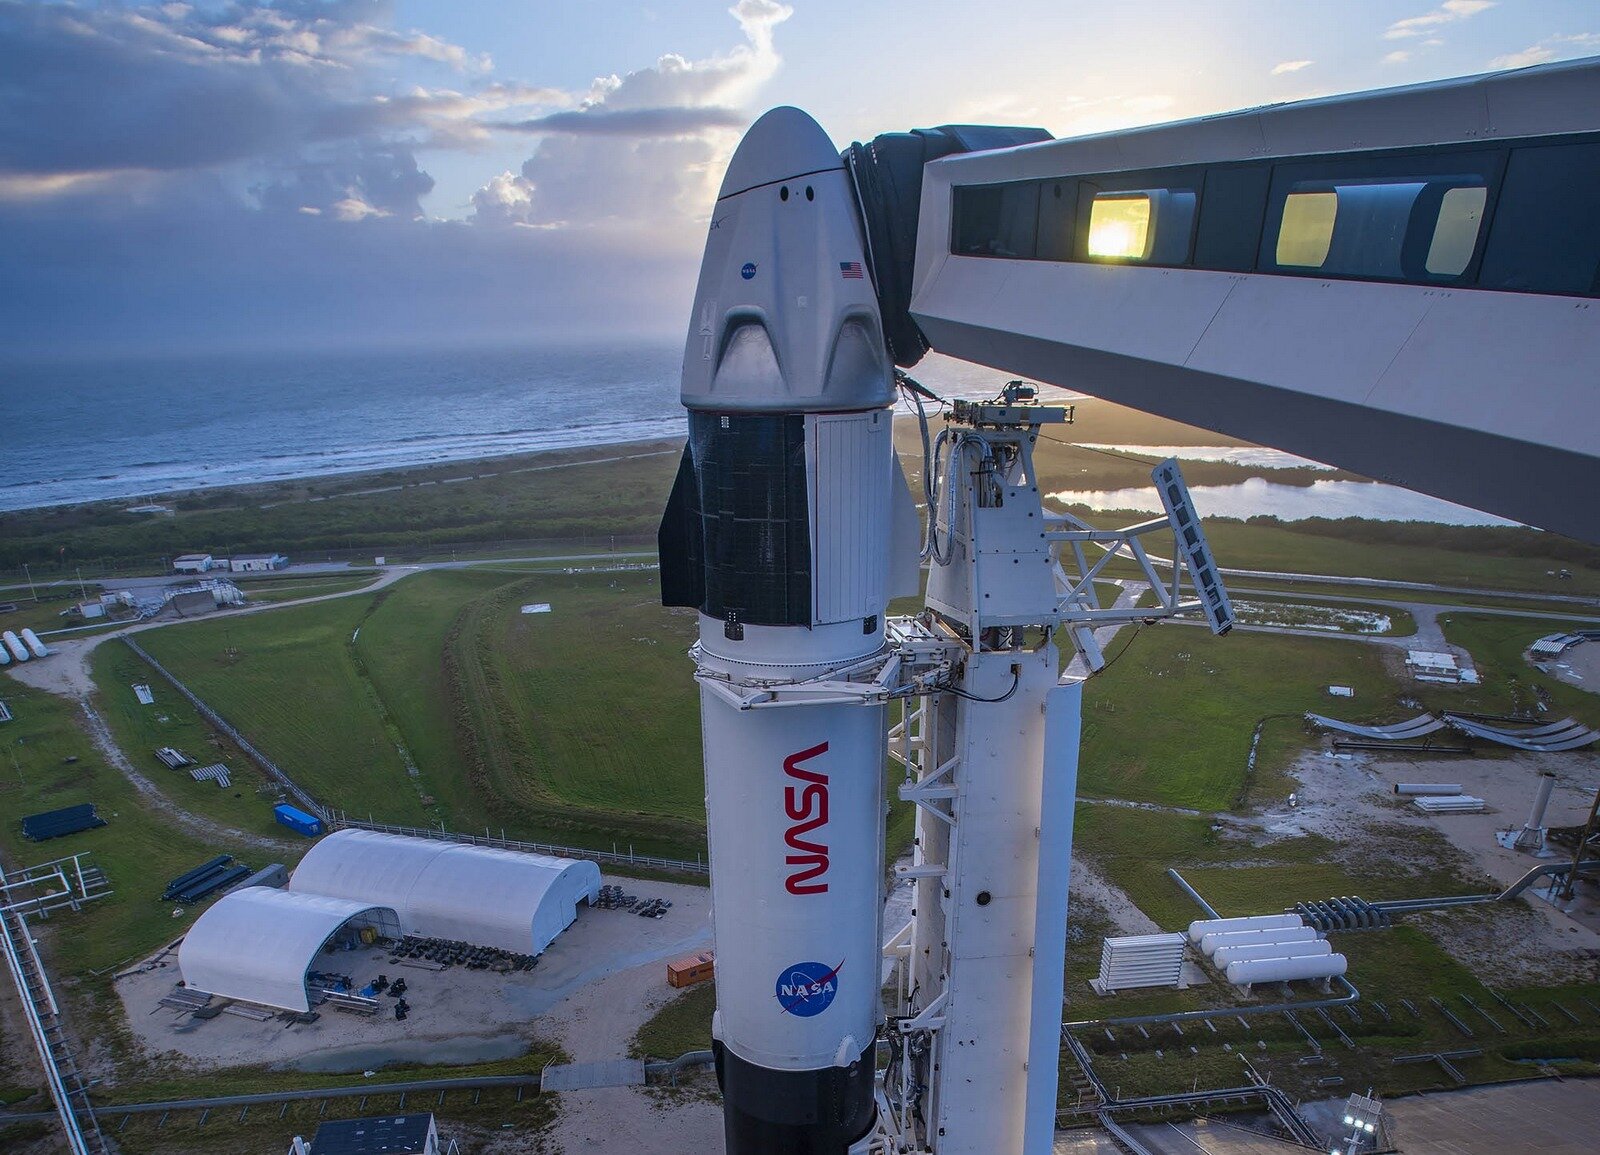 Δεύτερη επανδρωμένη αποστολή της SpaceX για λογαριασμό της NASA